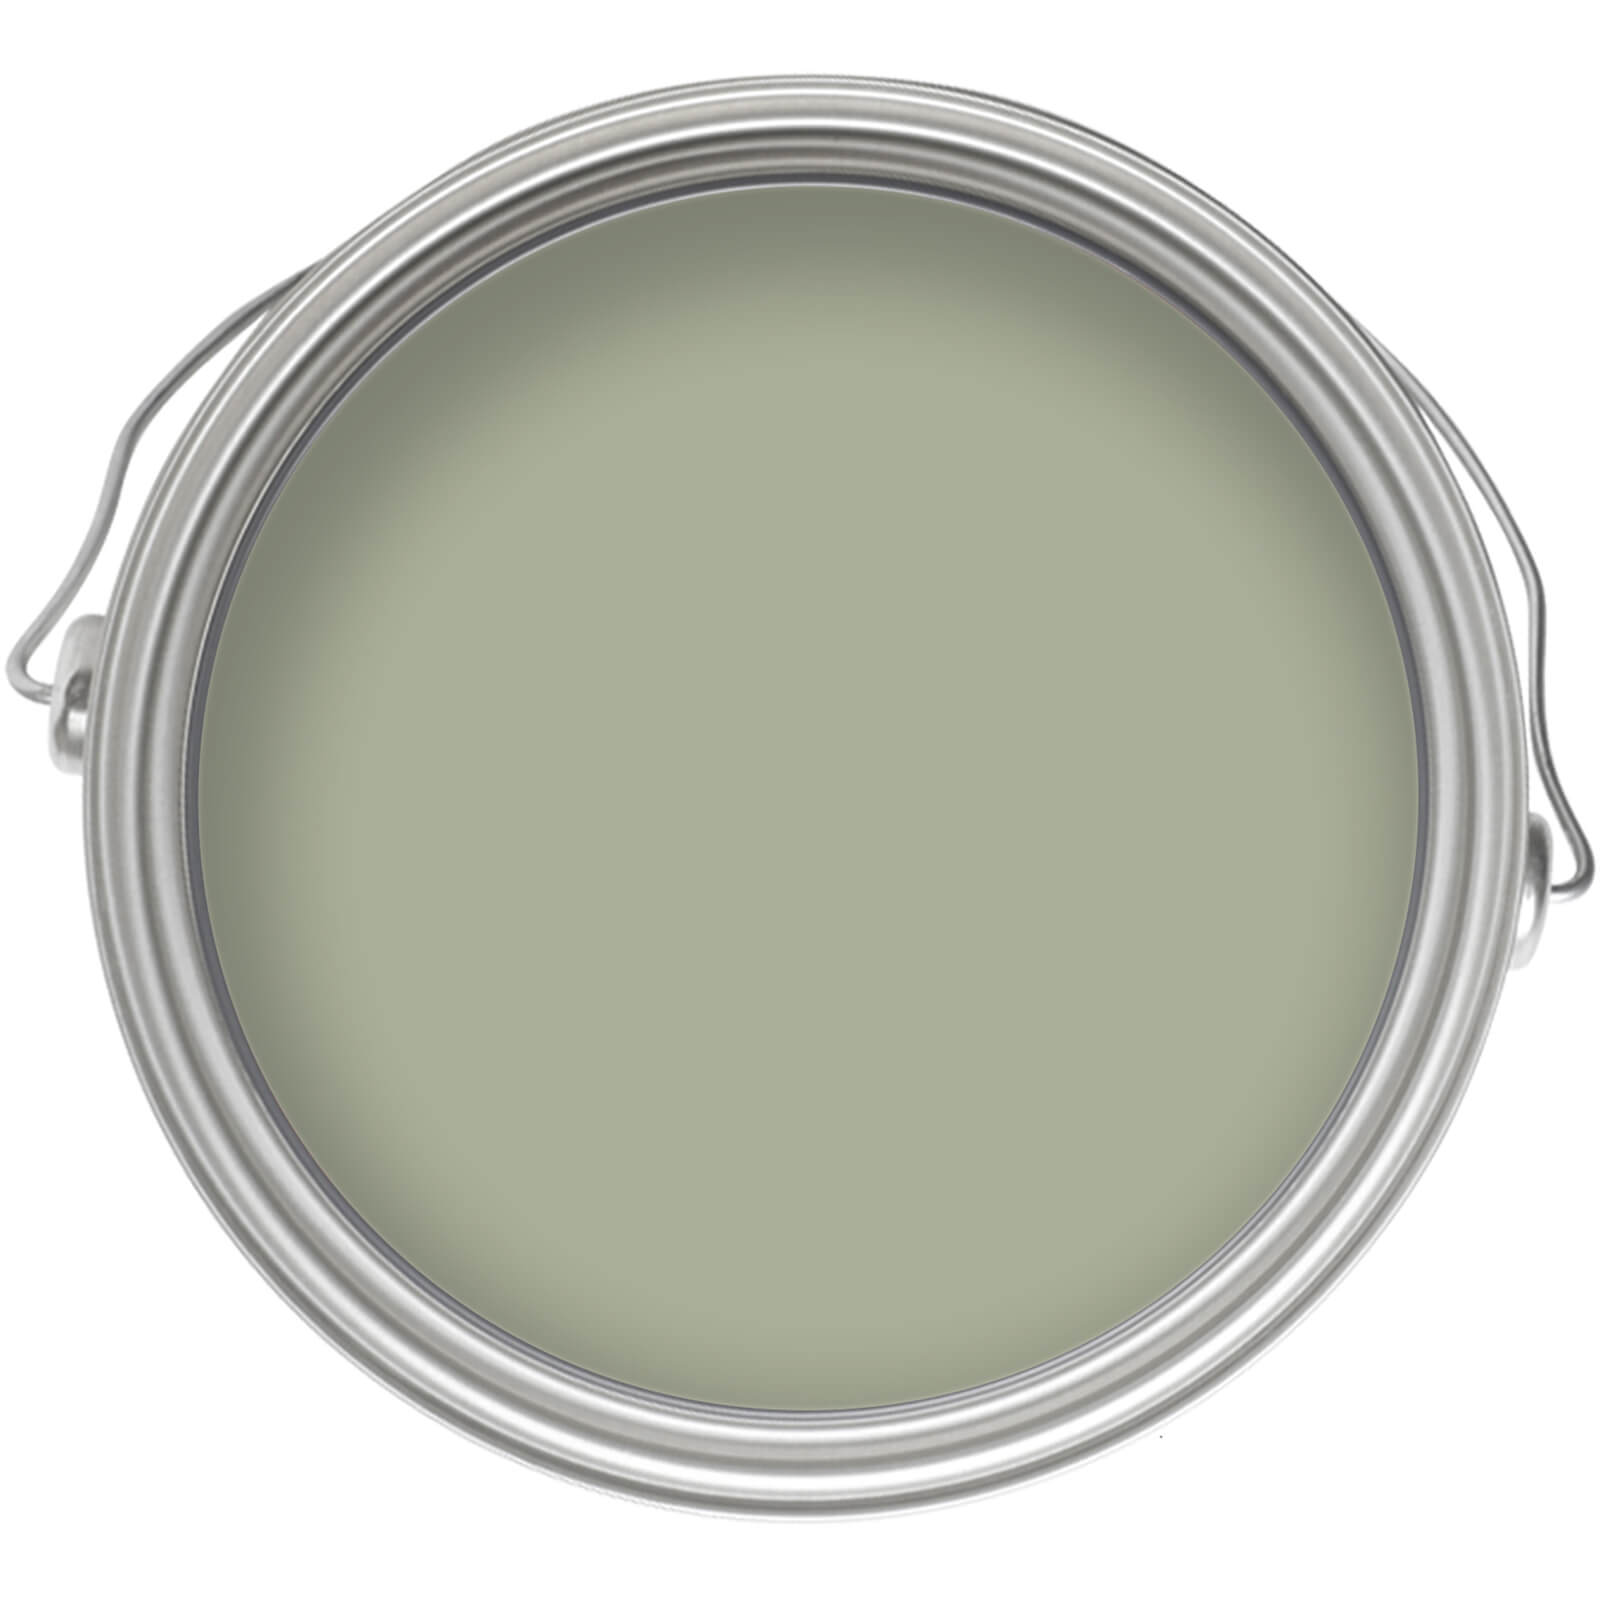 Homebase Matt Emulsion Paint Pale Olive - 2.5L